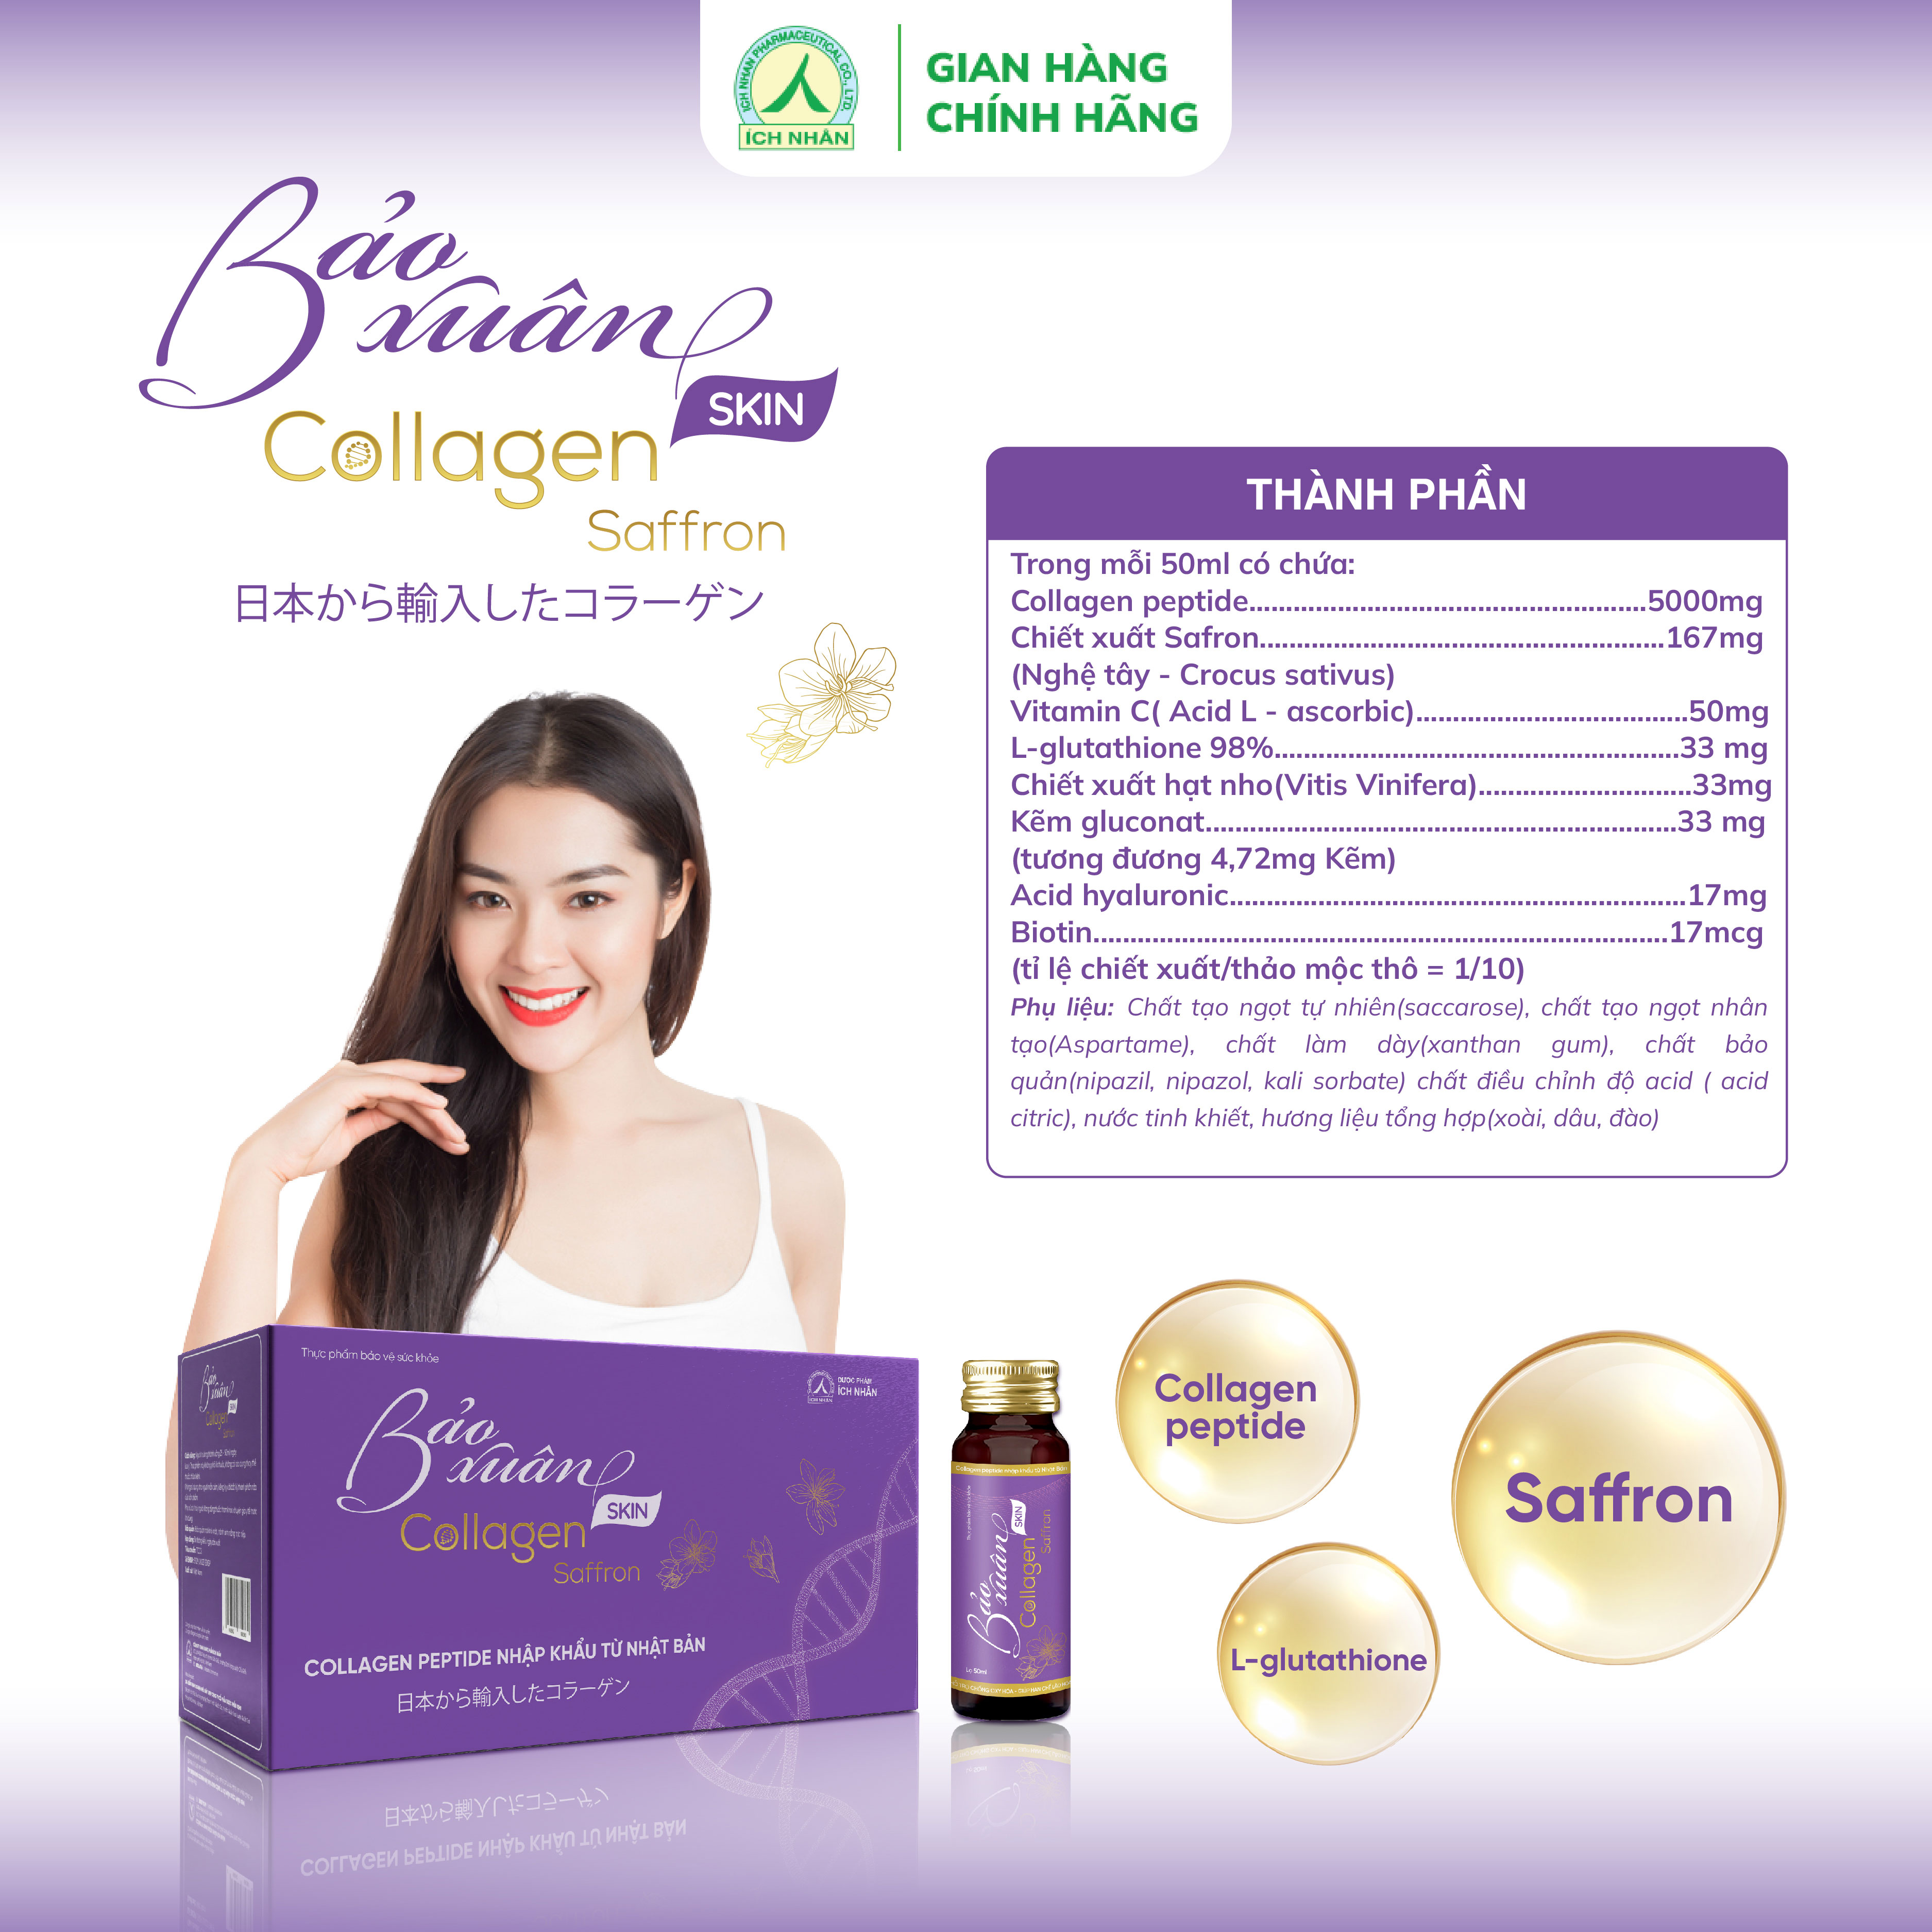 Hình ảnh Nước Uống Bổ Sung Bảo Xuân Skin Collagen Saffron giúp hạn chế lão hóa, tăng đàn hồi cho da, làm sáng đẹp da 10 Lọ x 50ml